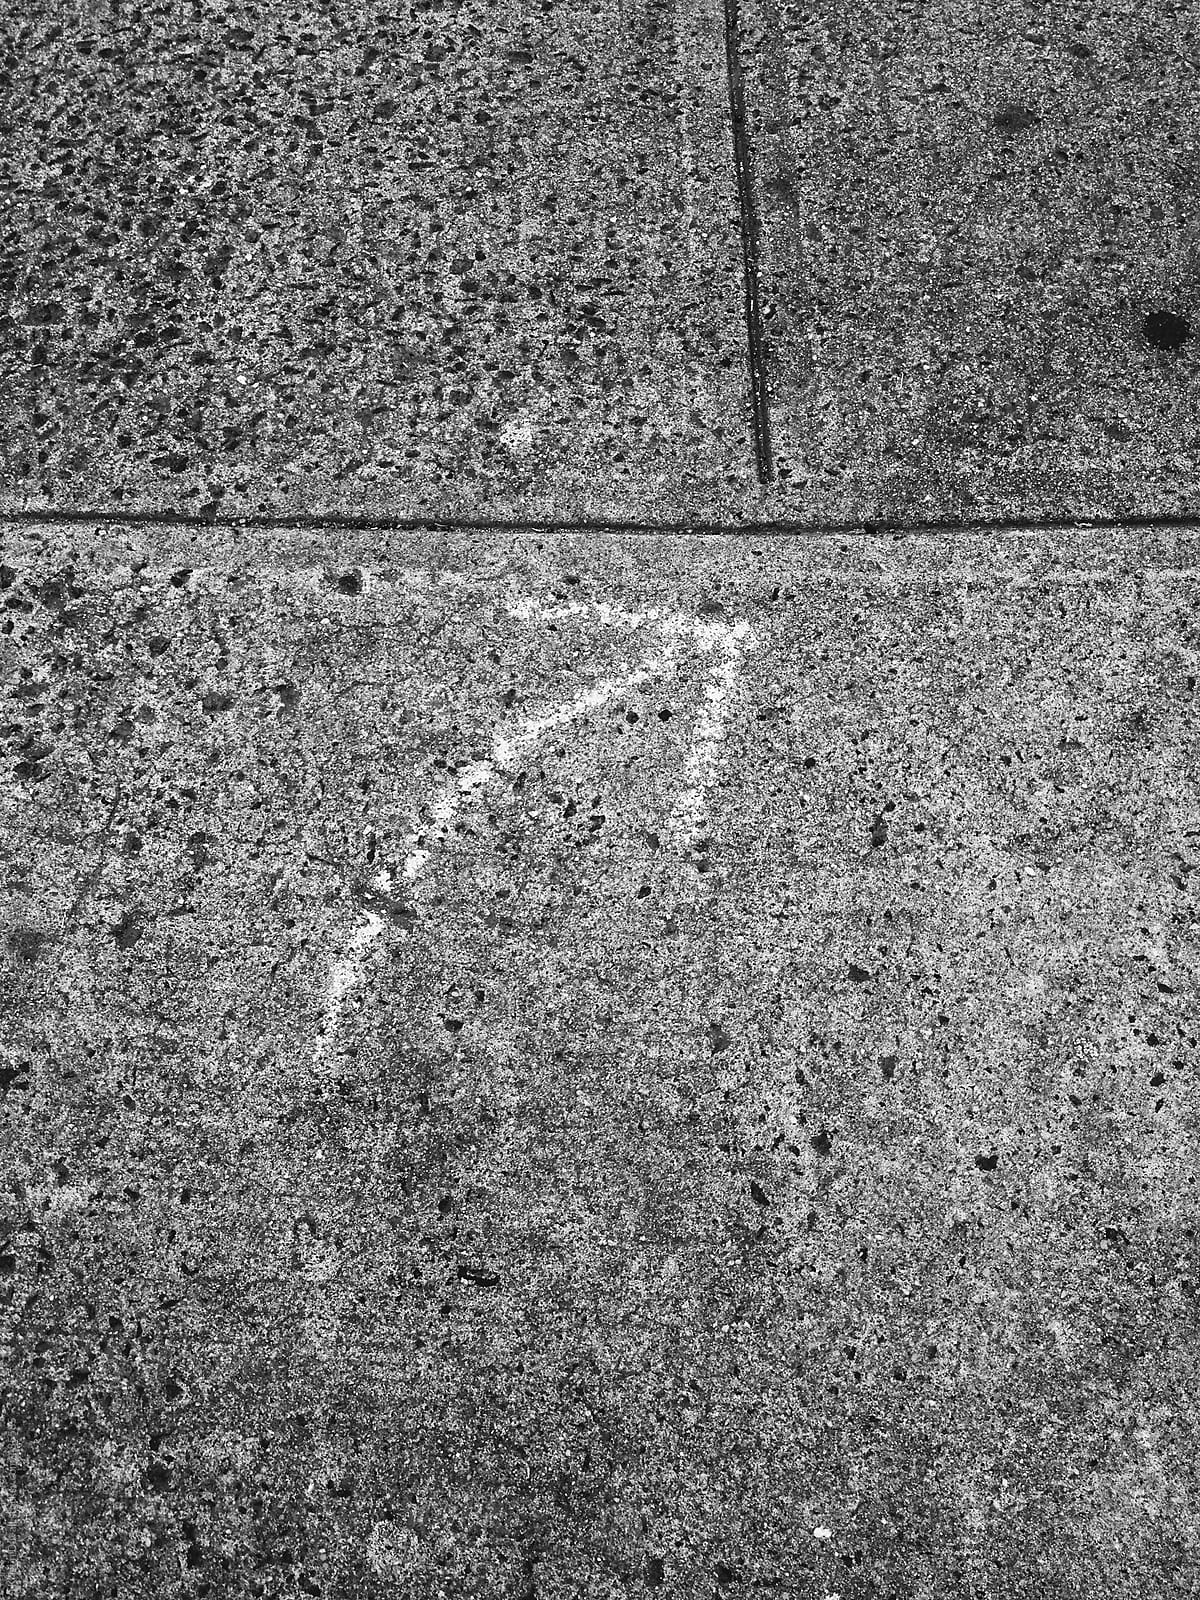 Arrow drawn on sidewalk